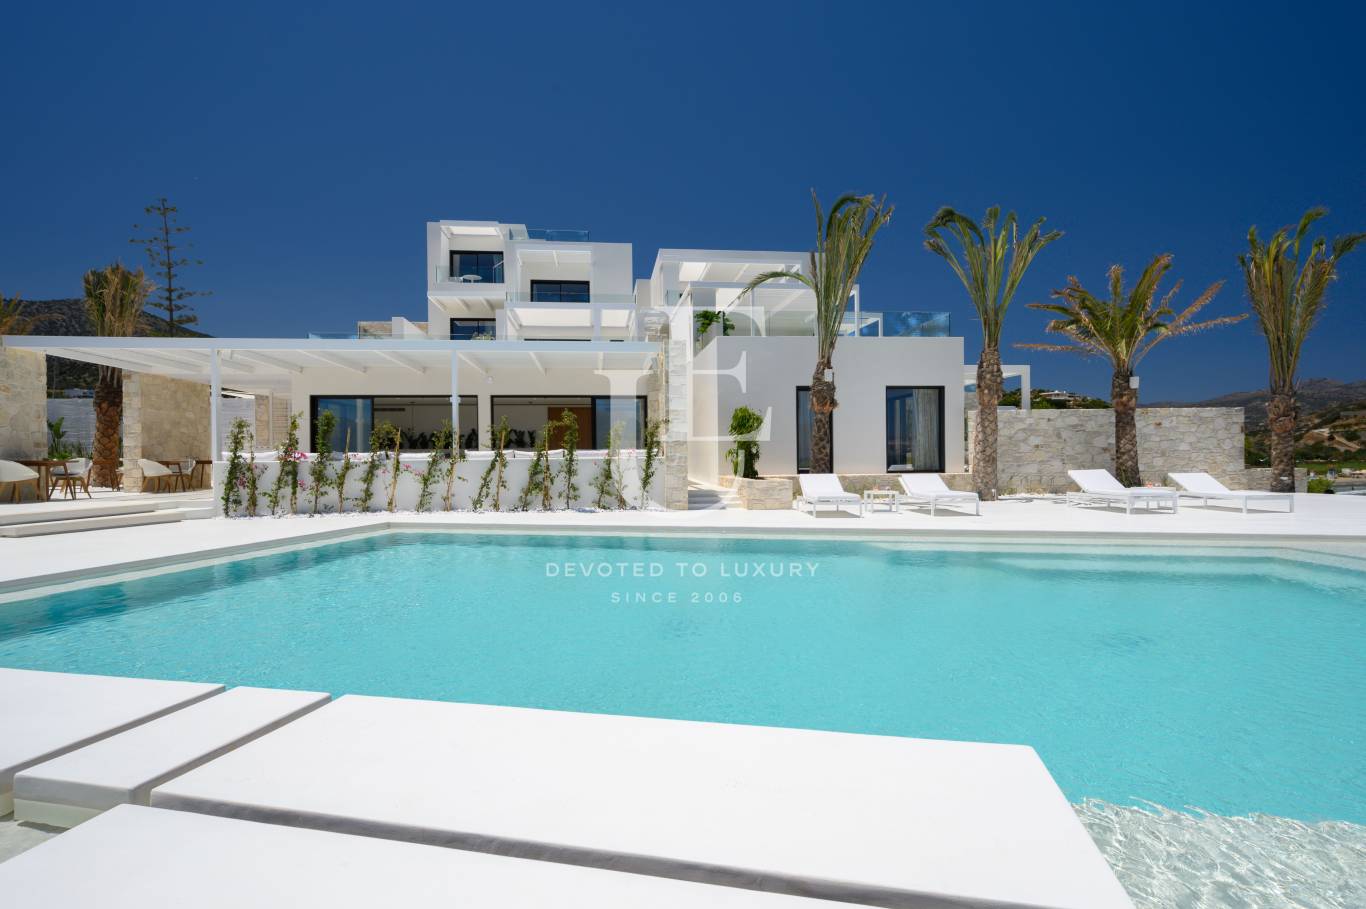 Хотел / Apartment house за продажба в остров Крит,  - код на имота: N21077 - image 10